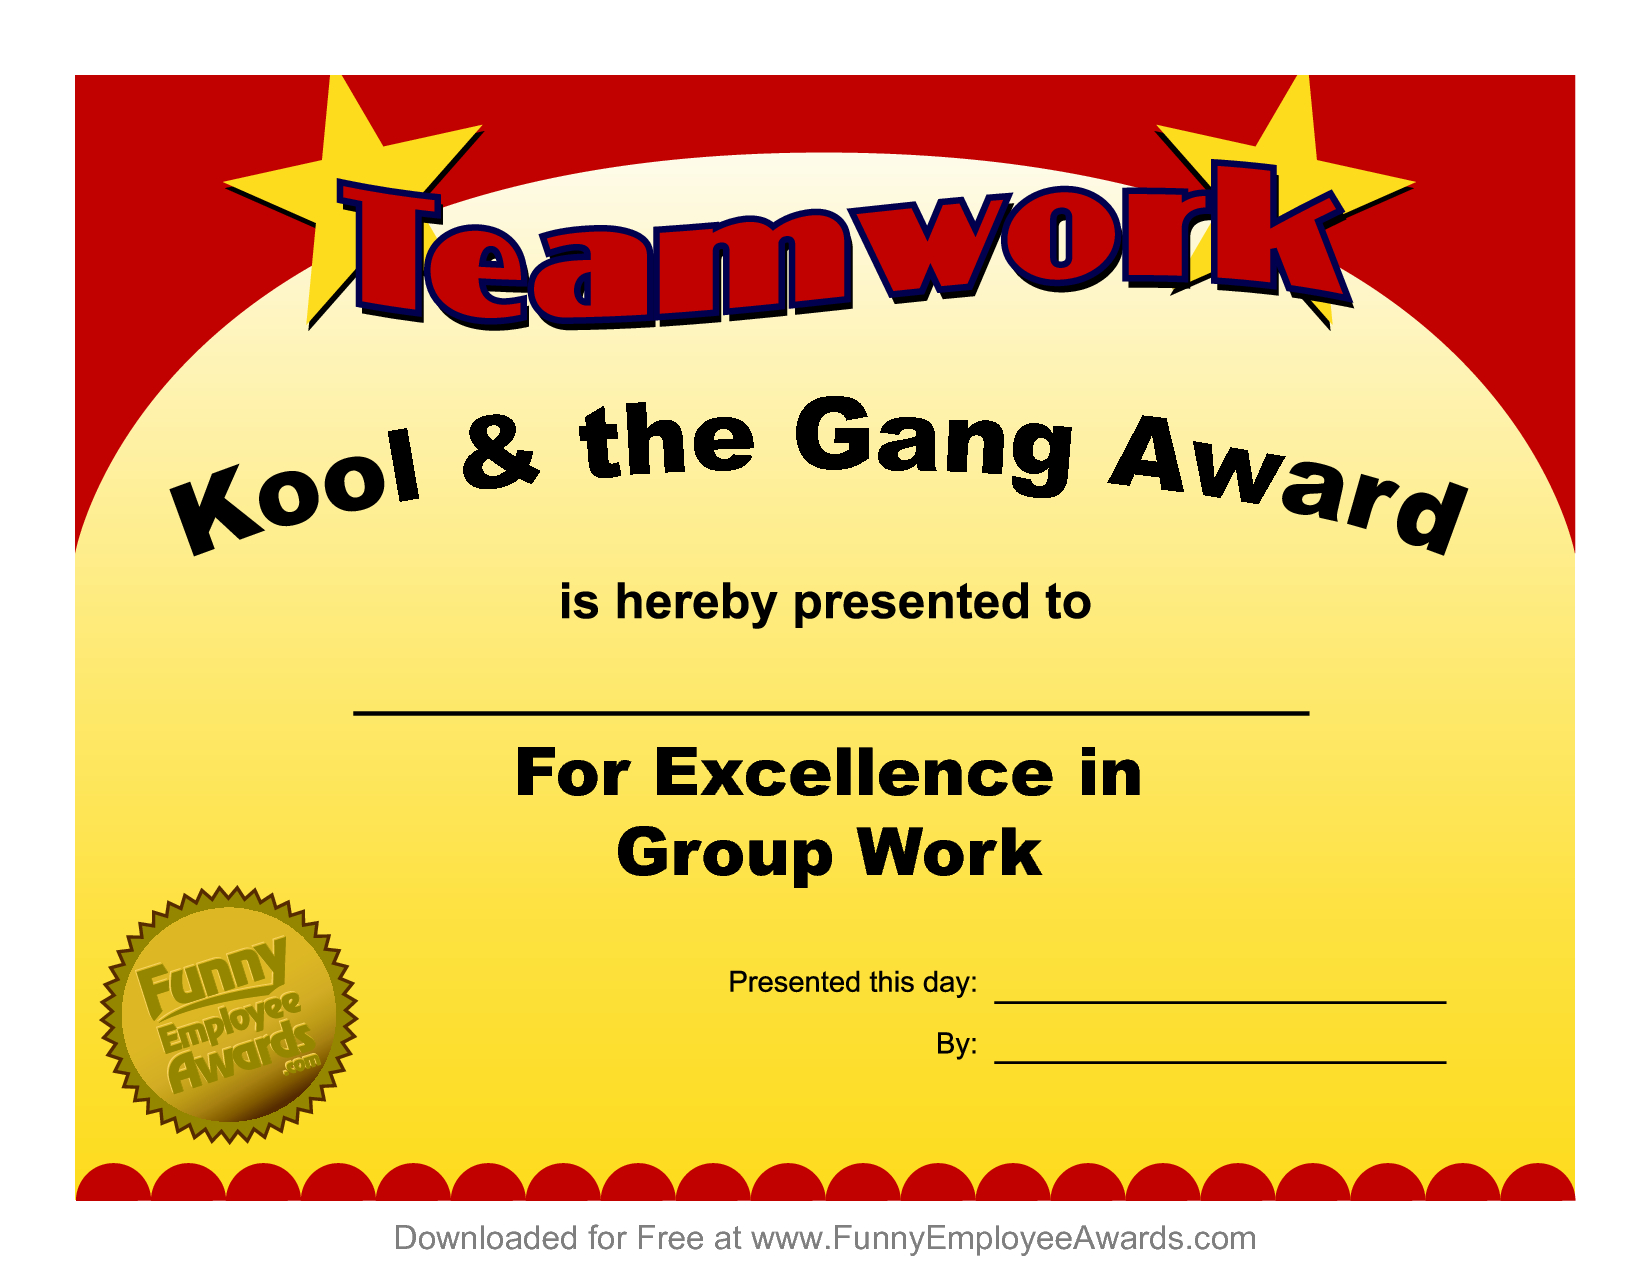 Fun Award Templatefree Employee Award Certificate Templates For Free Funny Award Certificate Templates For Word